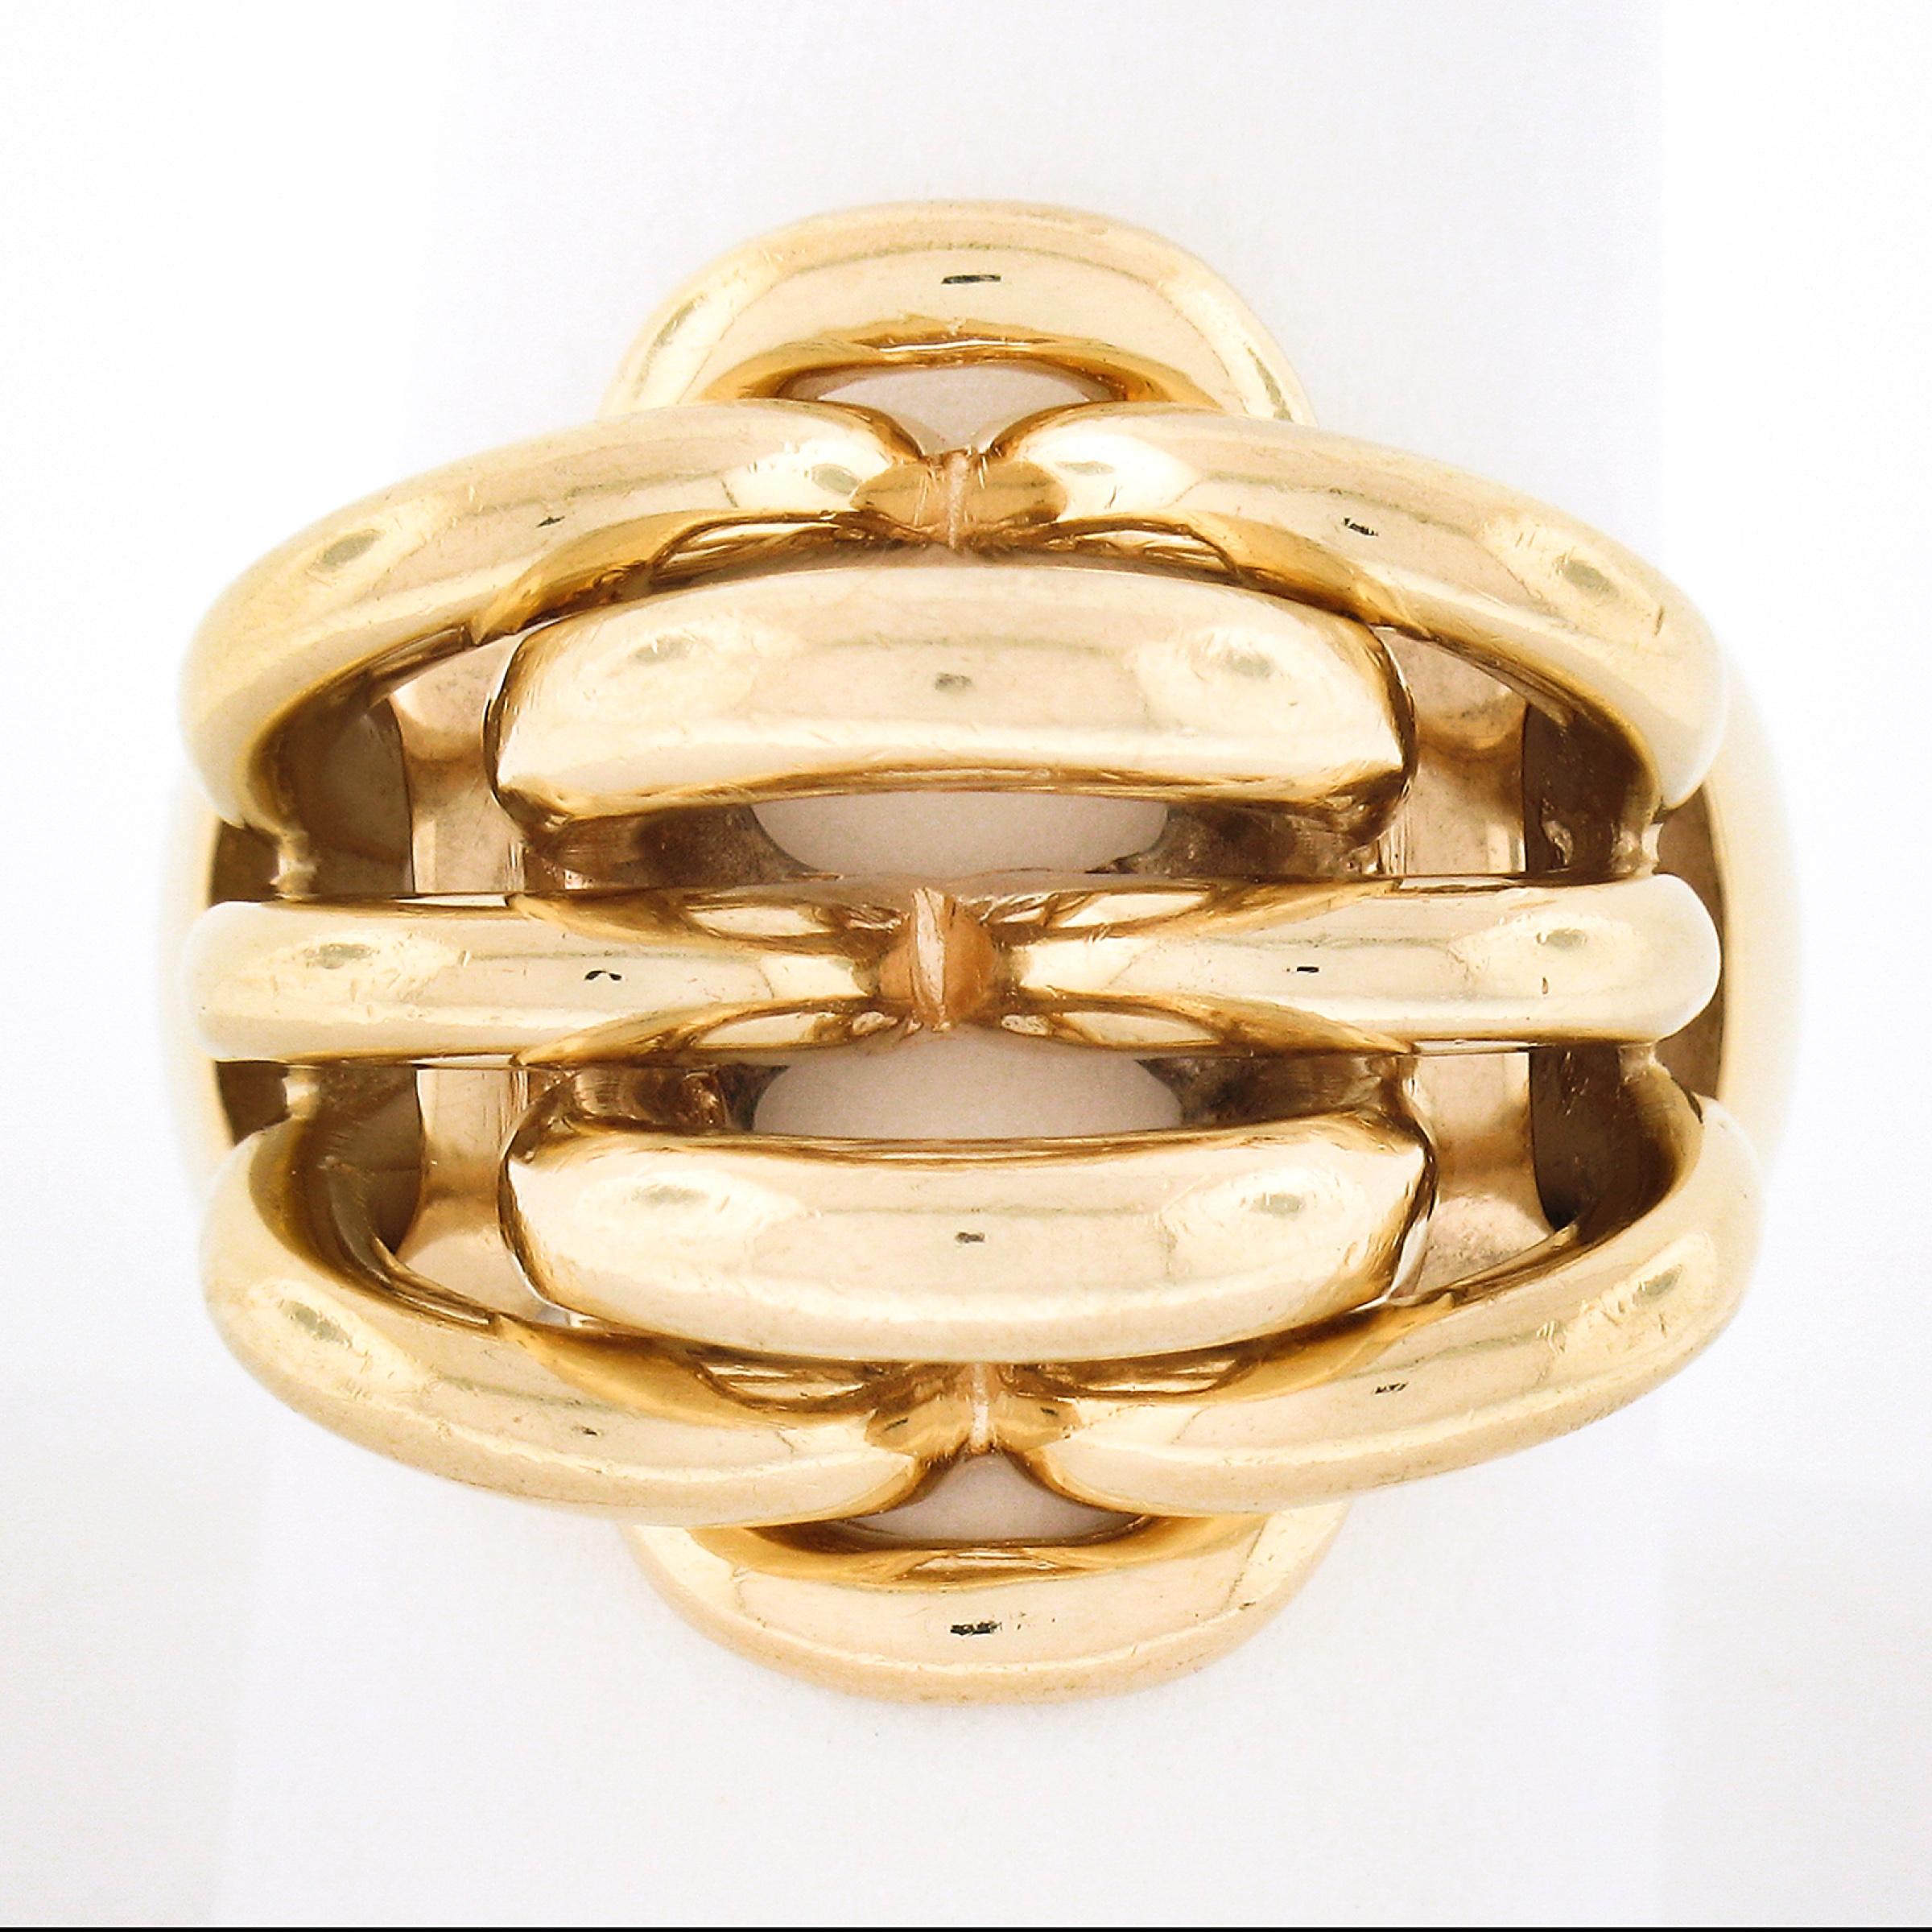 Dieser kühne und einzigartige Retro Tiffany & Co. Vintage-Ring ist aus massivem 14-karätigem rosafarbenem Gelbgold gefertigt. Es weist ein hochglänzendes, ineinandergreifendes Webmuster auf. Der breite Ring befindet sich in einem ausgezeichneten